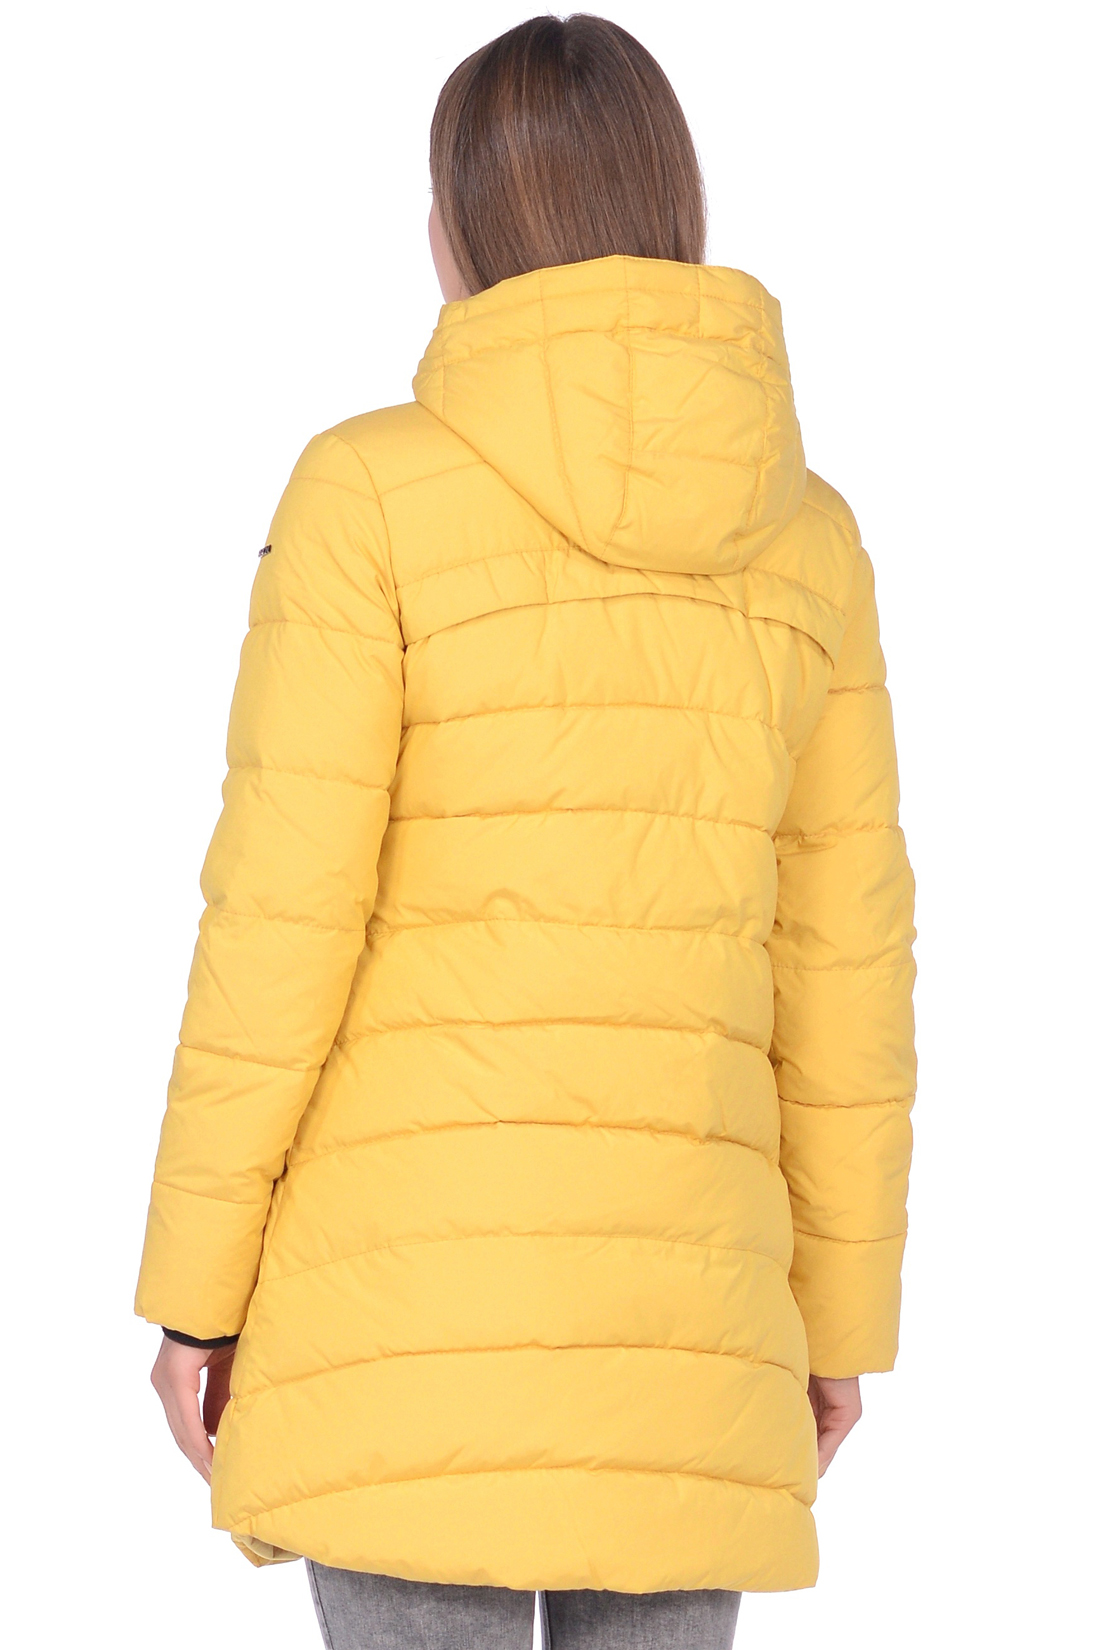 Куртка с фигурной прострочкой (арт. baon B038588), размер M, цвет желтый Куртка с фигурной прострочкой (арт. baon B038588) - фото 5